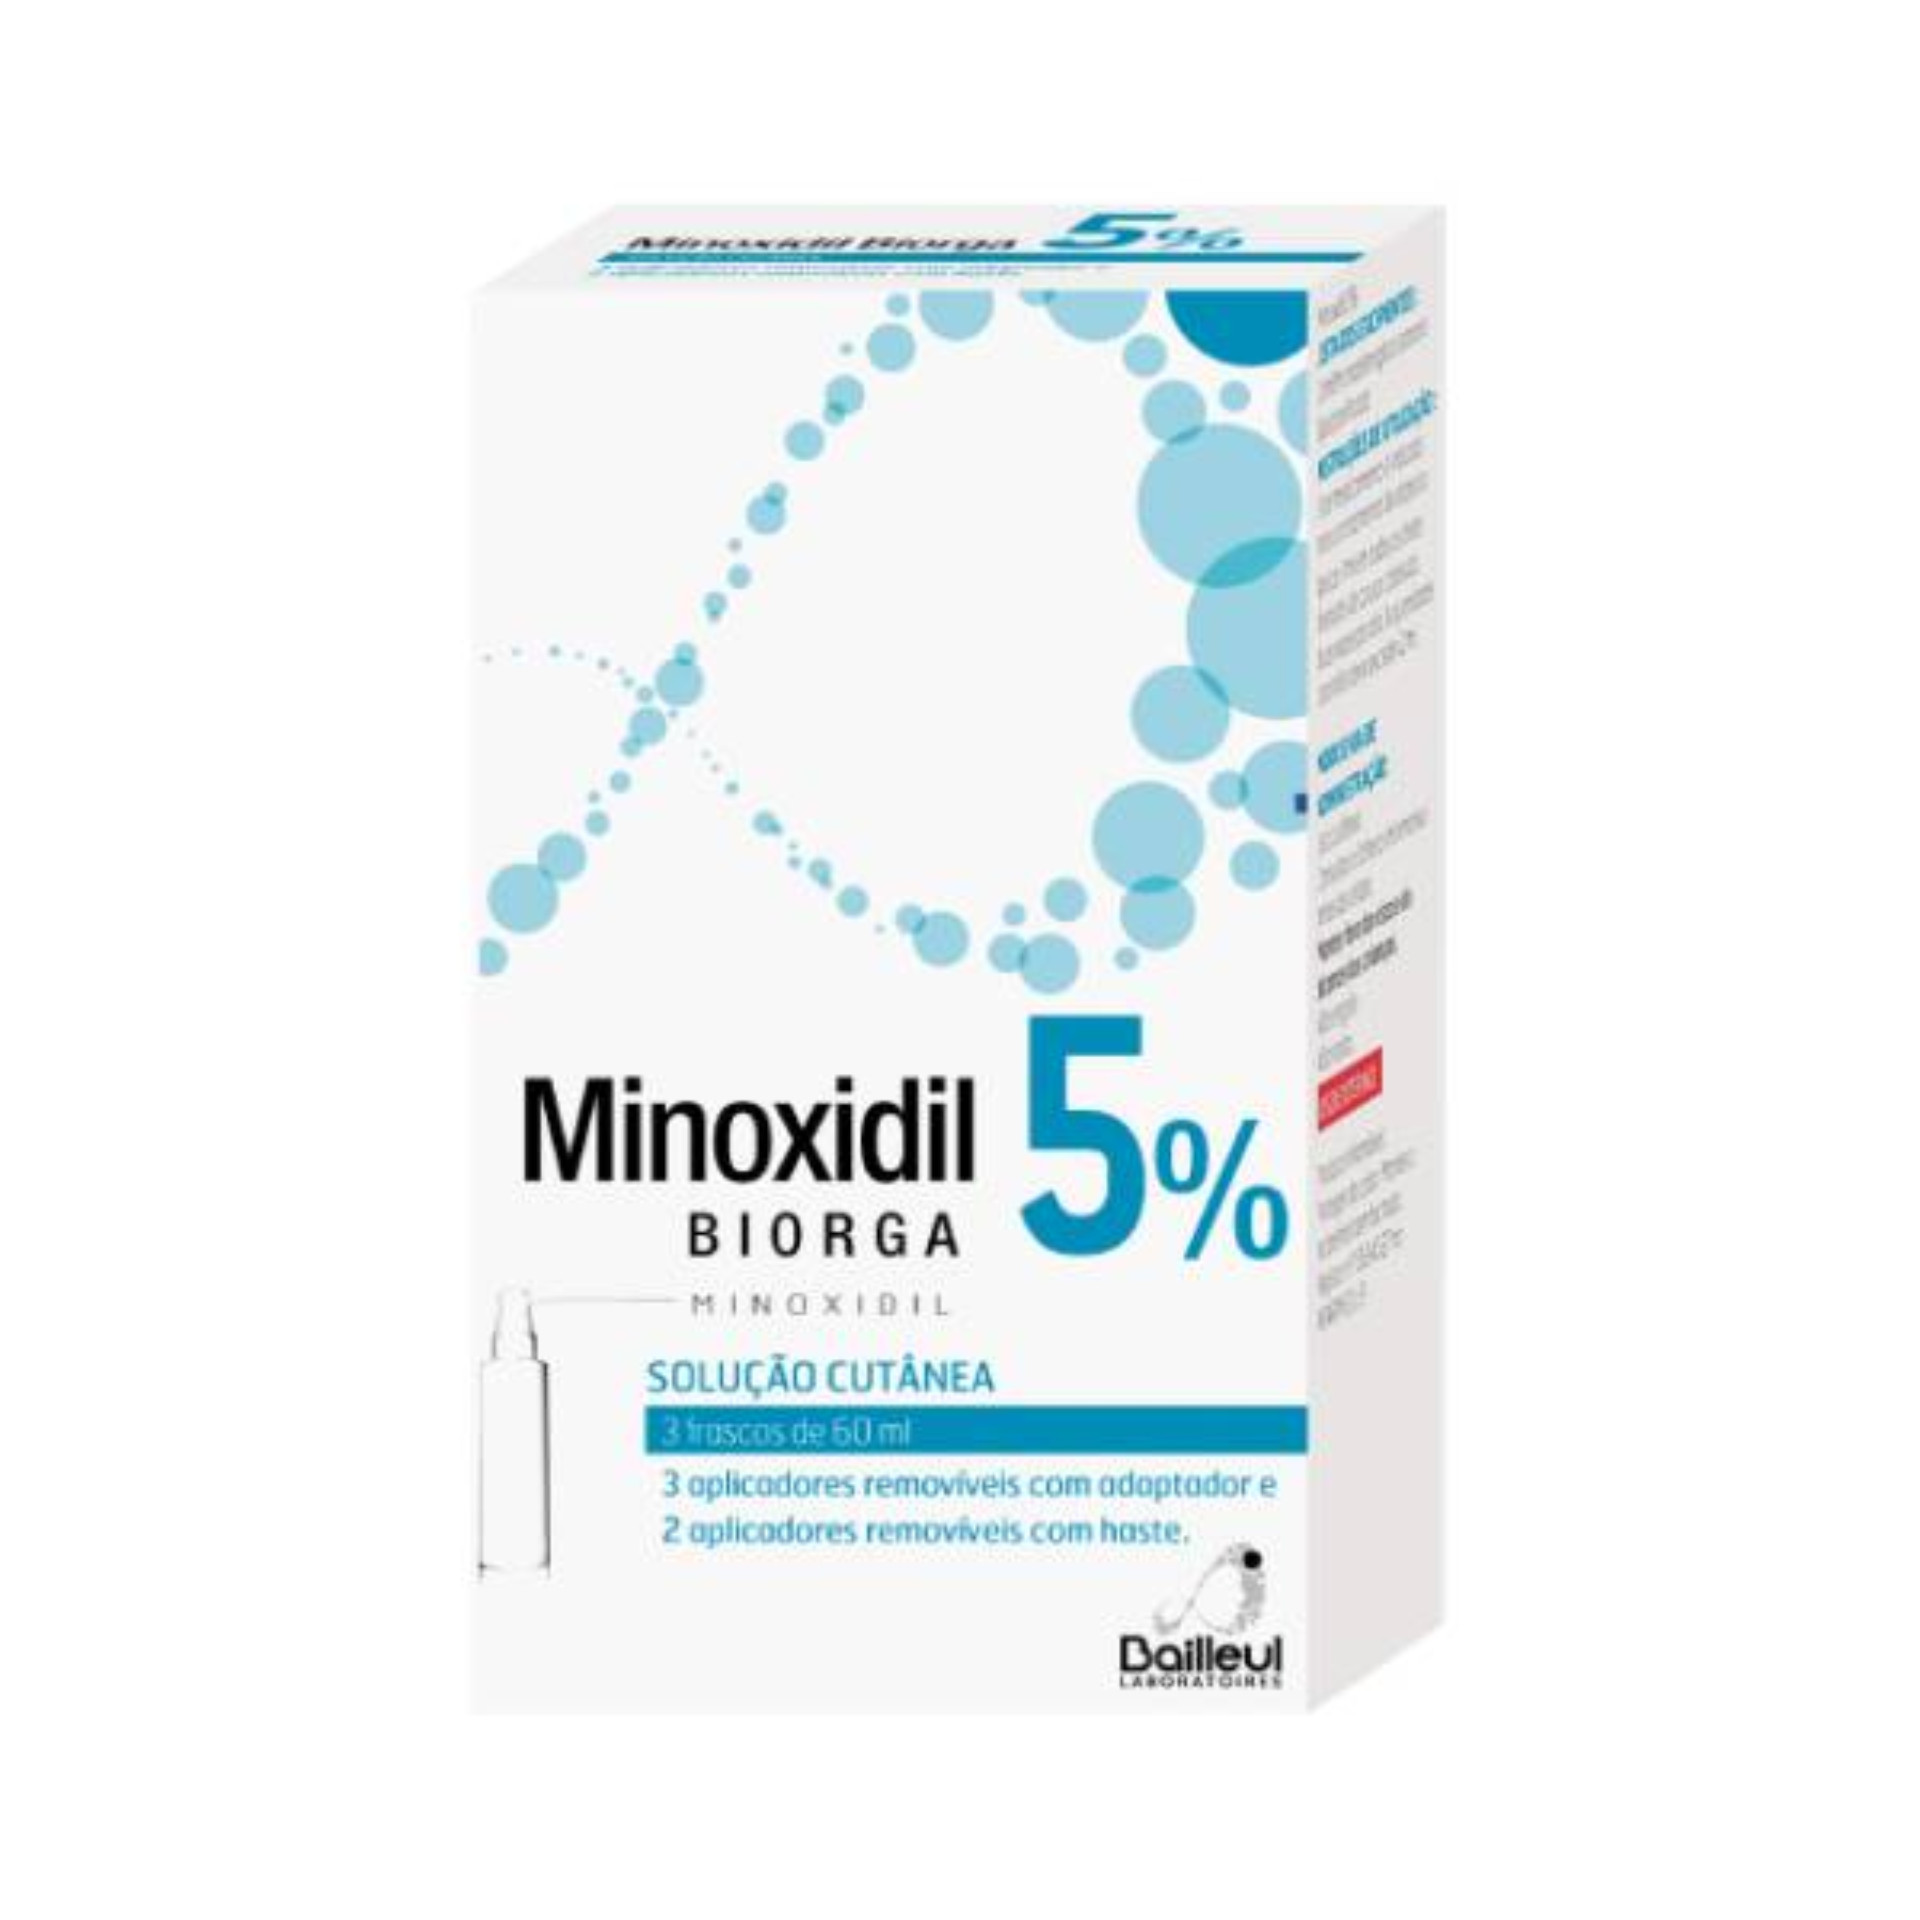 Biorga Minoxidil 5% Trio